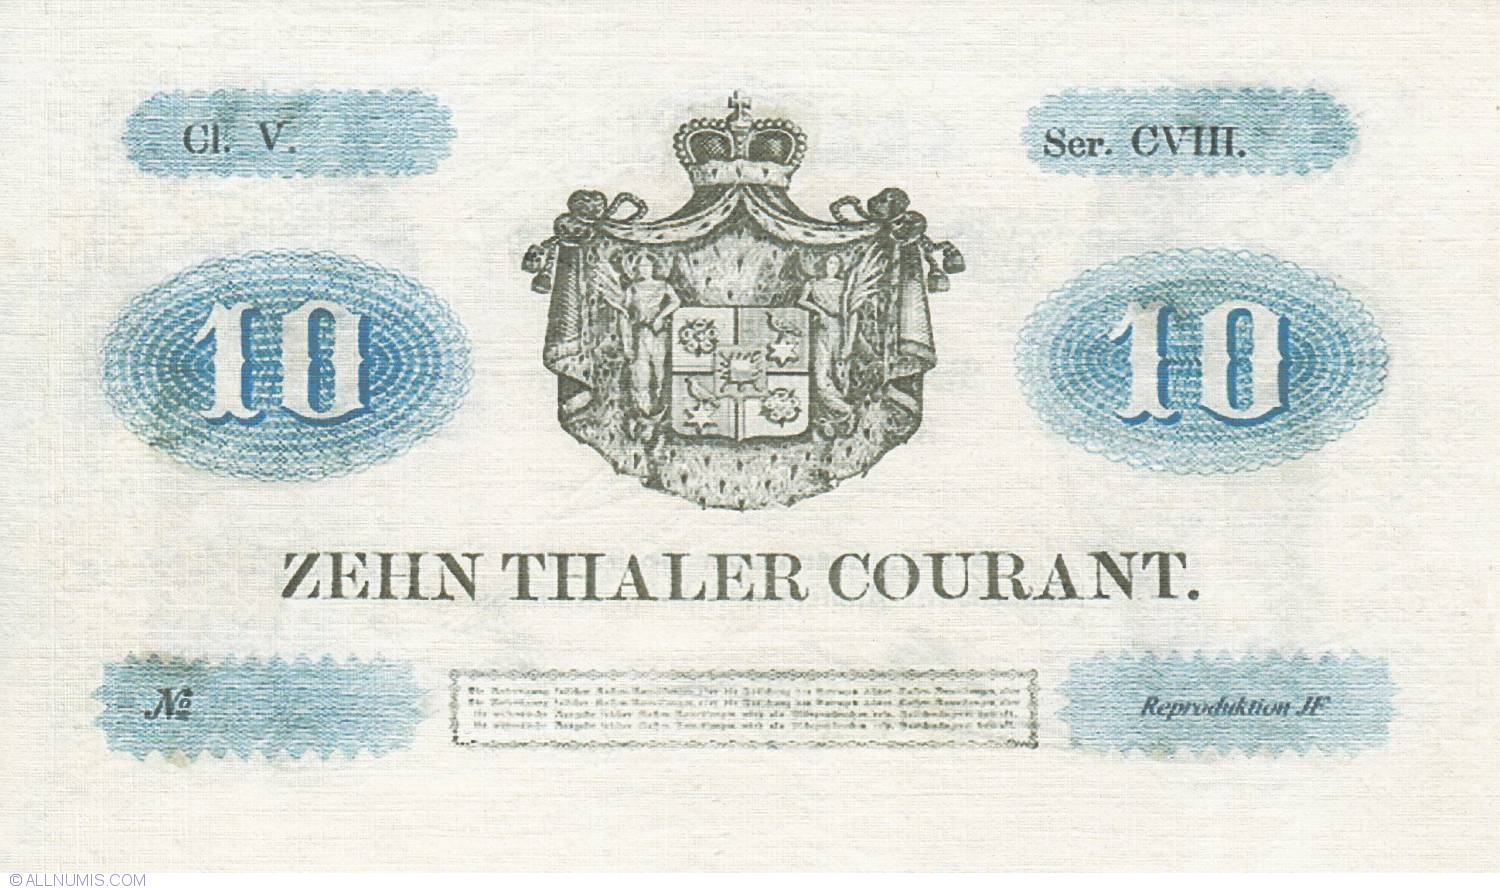 Reply 10. Банкноты германских государств. 2 Талер 1857. Германия 1857. Немецкие марки 1857.